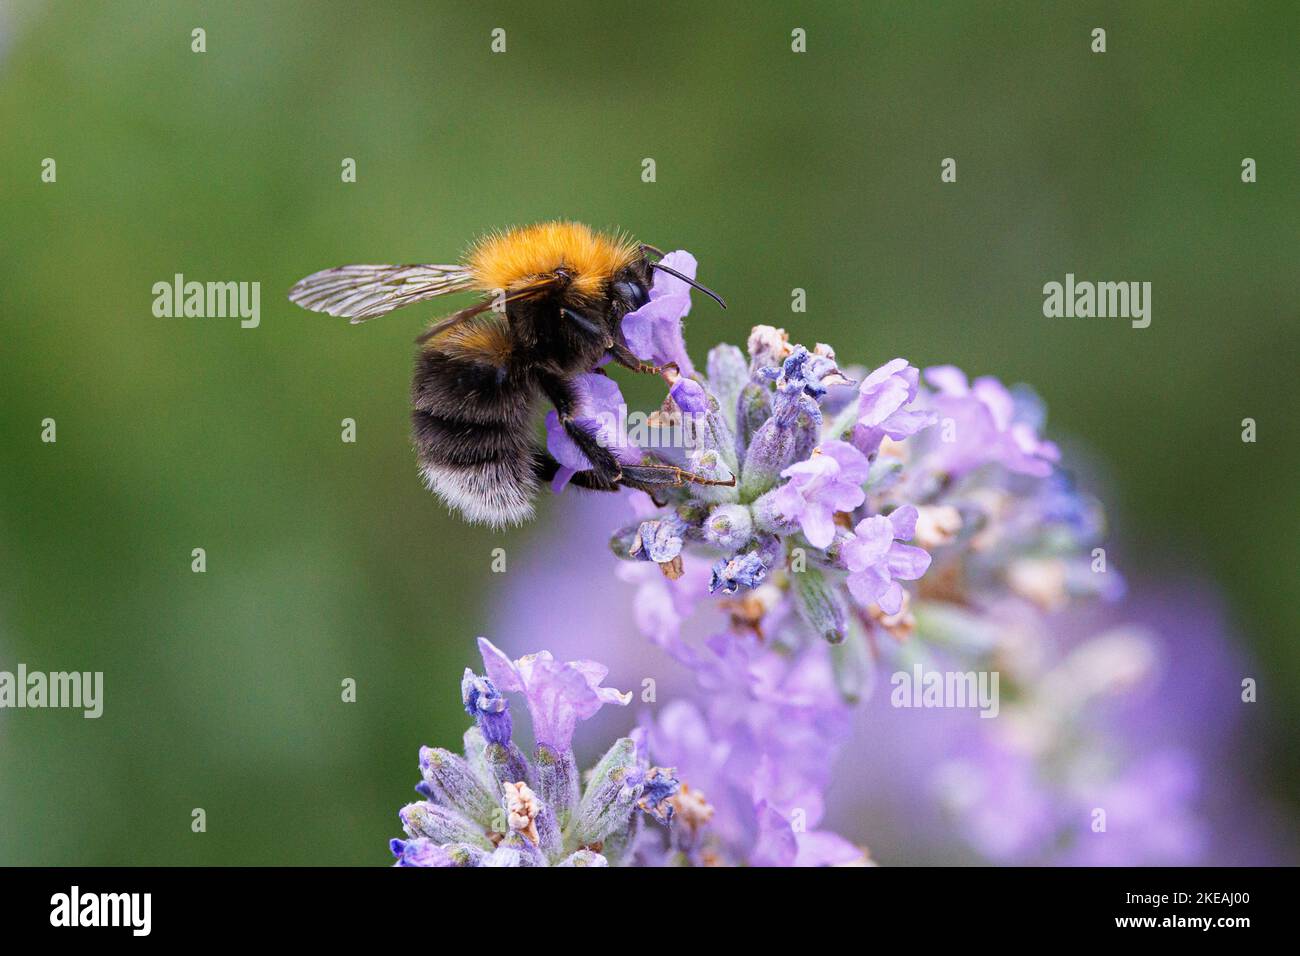 Arbre Bumblebee, Nouveau jardin Bumblebee (Bombus hypnorum, Psithyrus hypnorum), suce le nectar de lavande, Allemagne, Bavière Banque D'Images